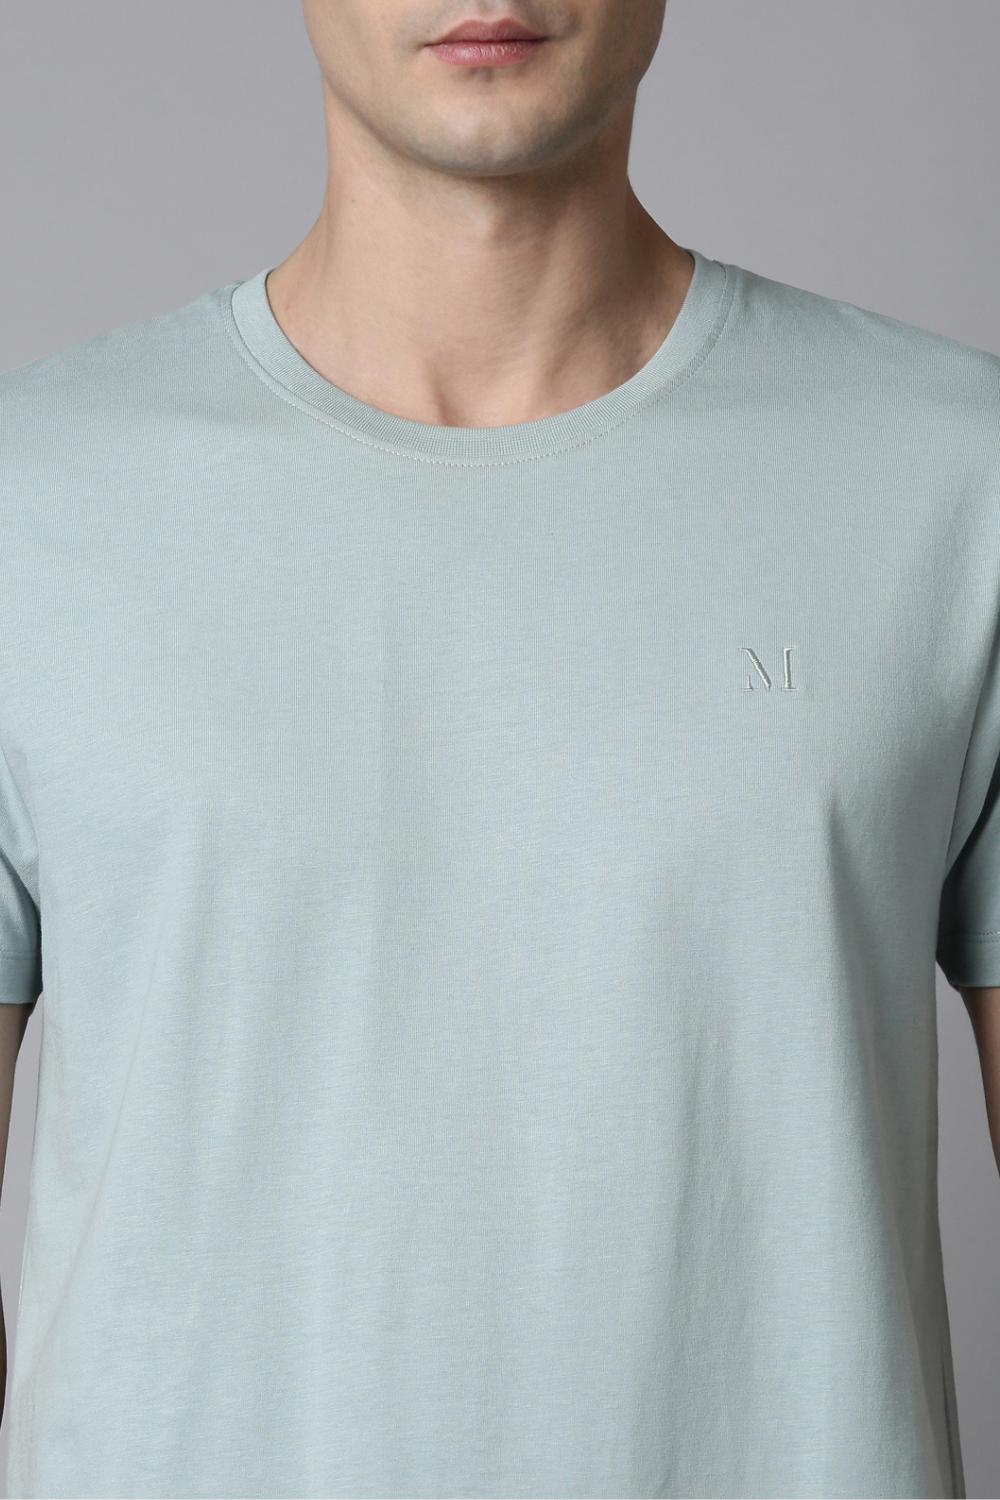 Shanghai blue - Solid t-shirt T-SHIRT Maxzone Clothing   